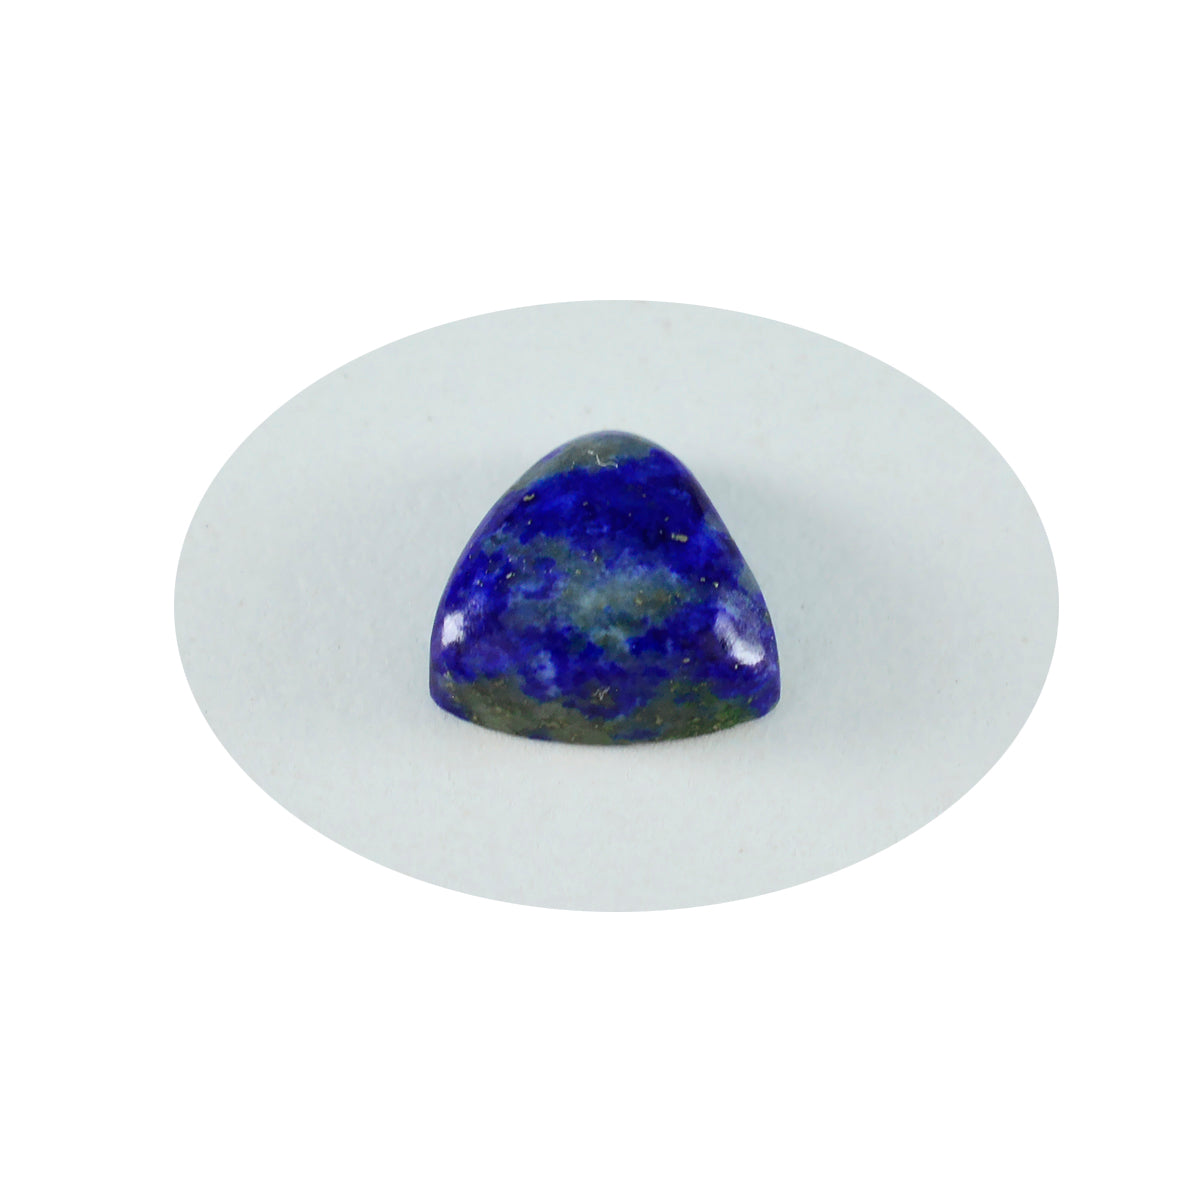 riyogems 1 шт. синий лазурит кабошон 11x11 мм форма триллион красивый качественный камень